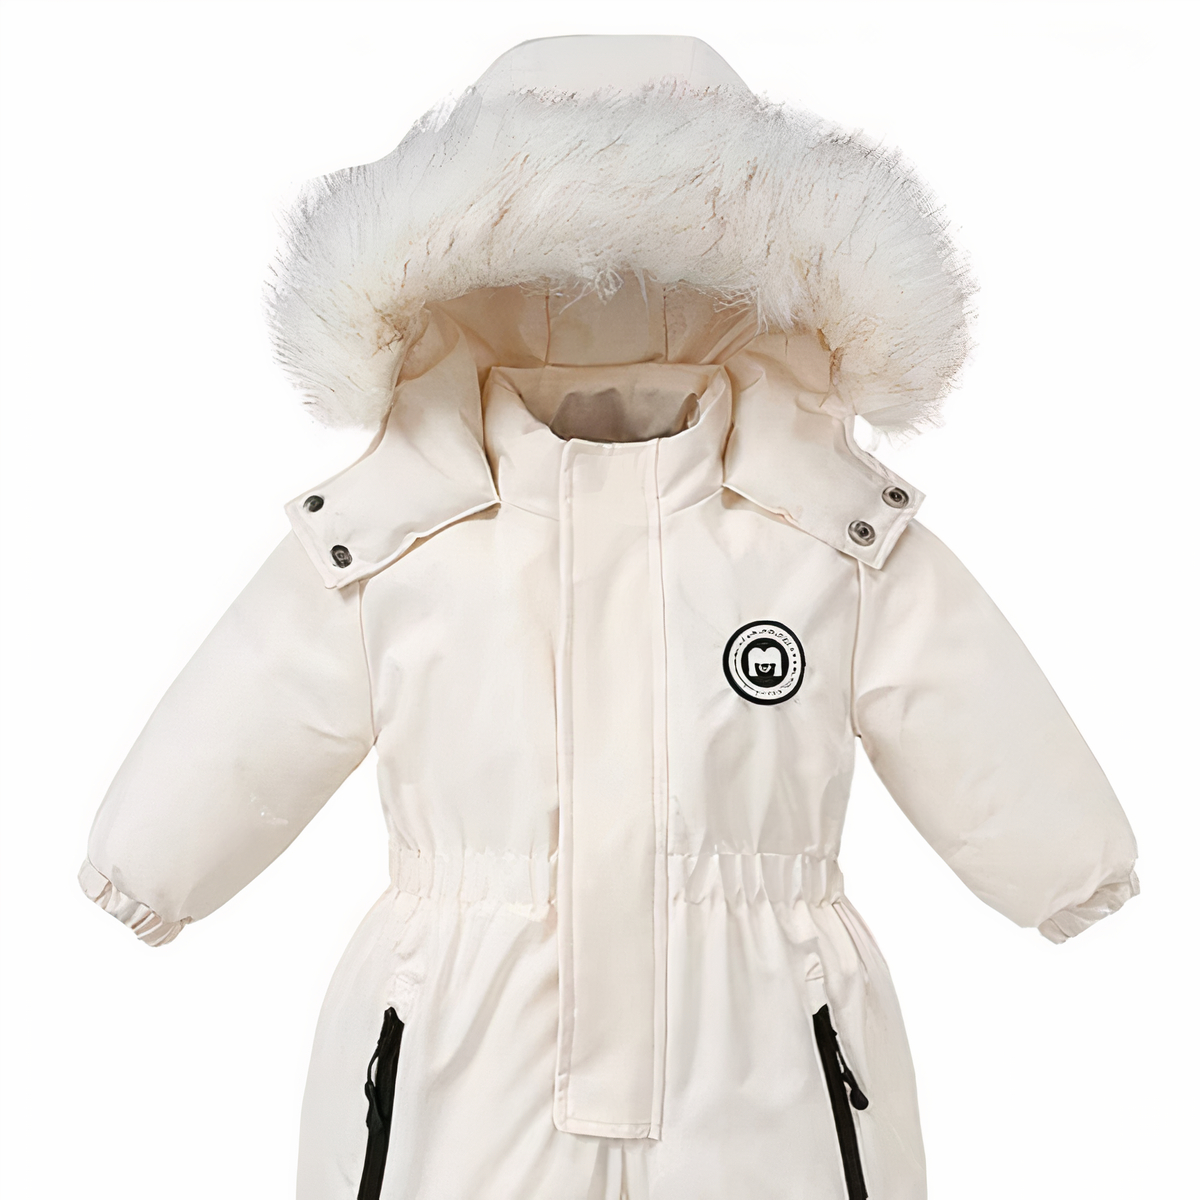 Combinaison doudoune blanche de ski à capuche avec fourrure pour fille sur fond blanc.